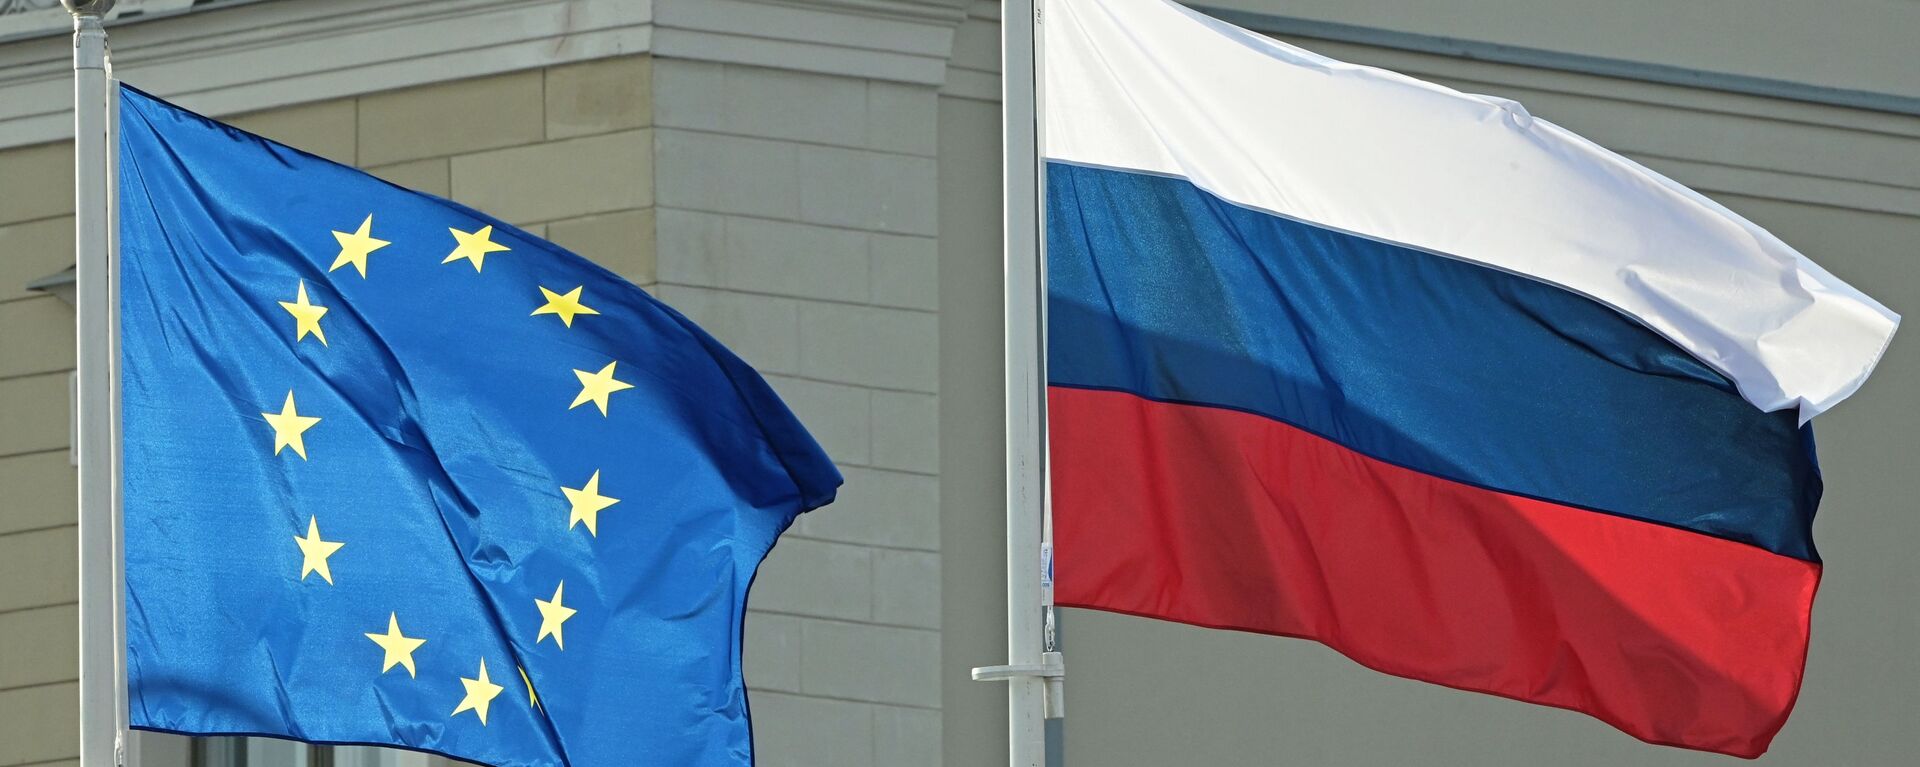 Флаги ЕС и России, архивное фото - Sputnik Lietuva, 1920, 07.02.2021